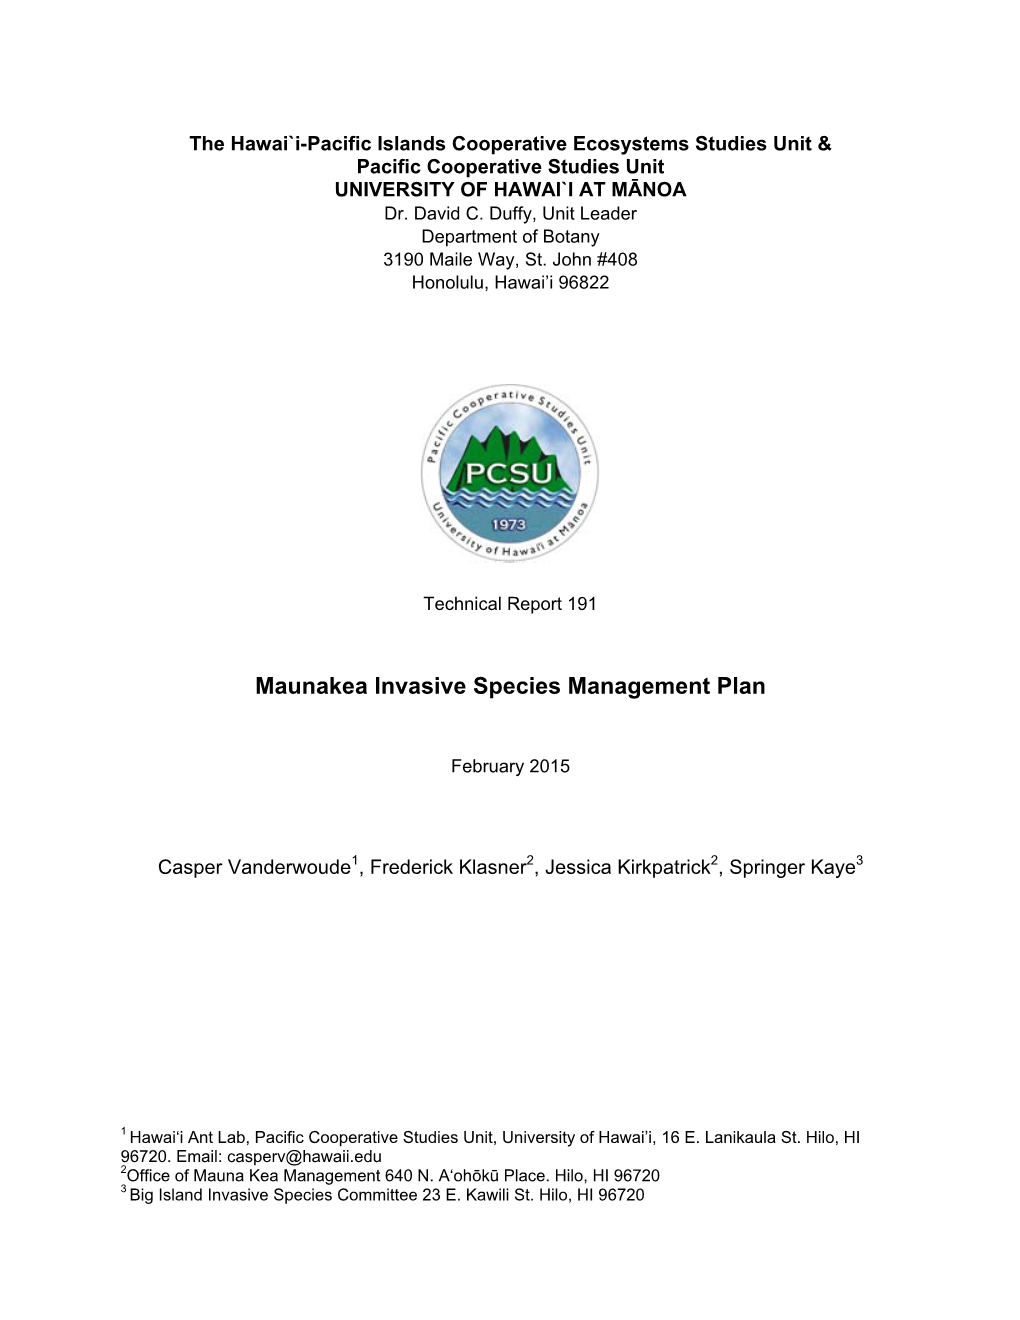 S. Maunakea Invasive Species Management Plan